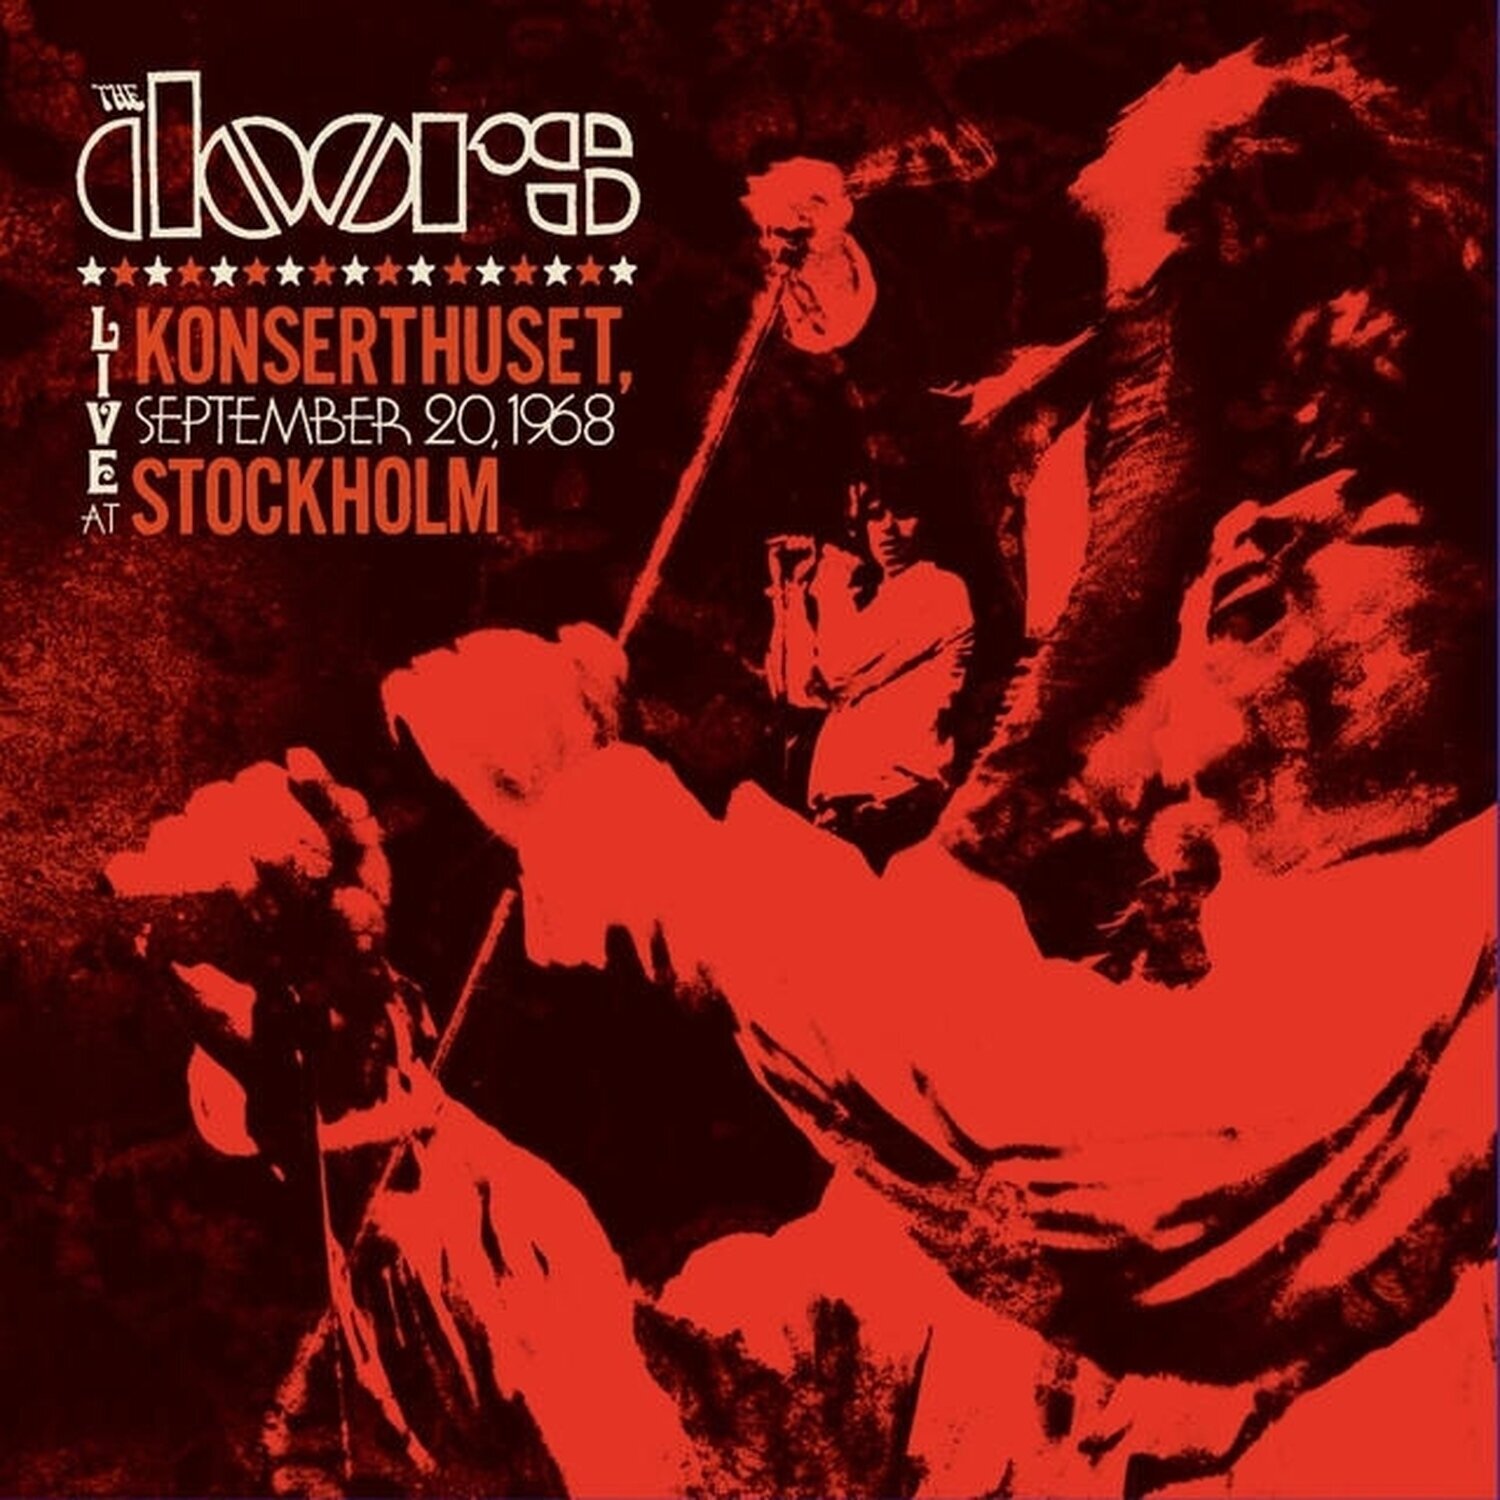 Musik-CD The Doors - Live At Konserthuset, Stockholm, 1968 (Rsd 2024) (2 CD)